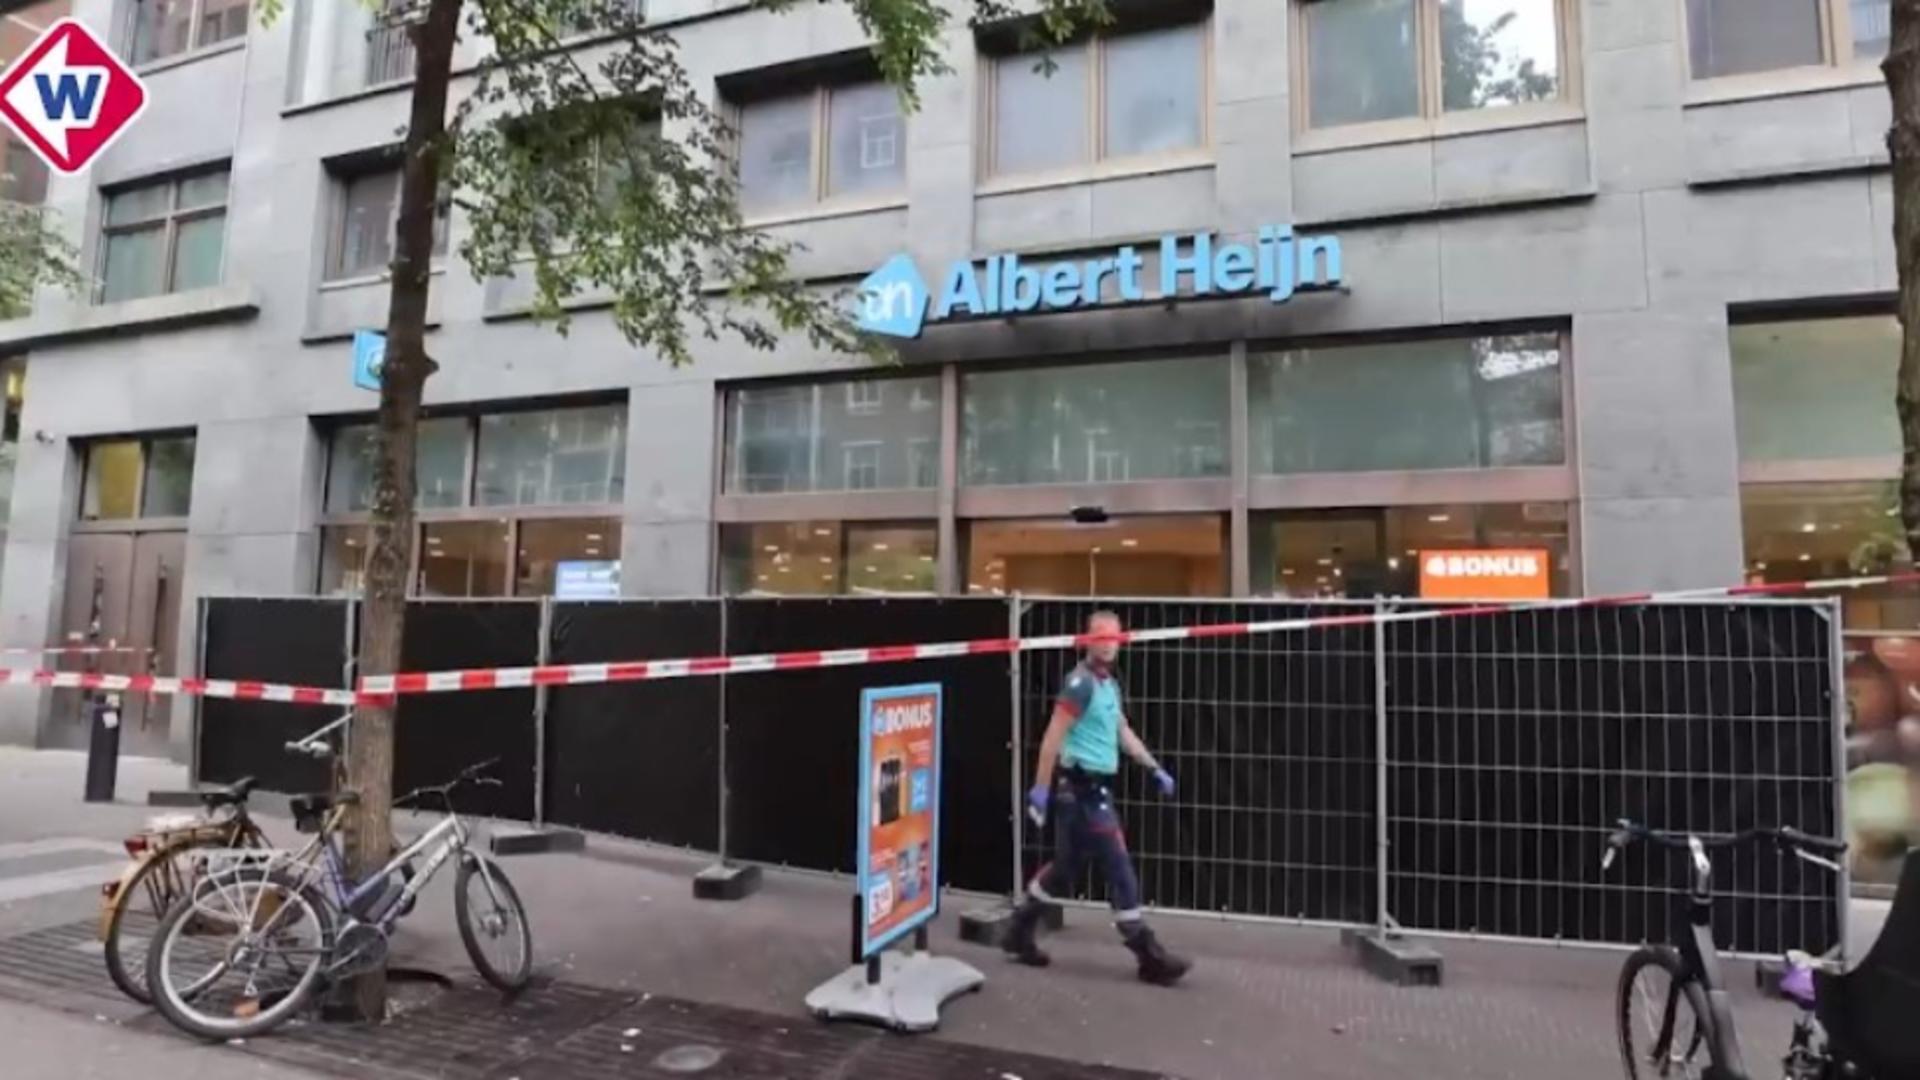 Româncă înjunghiată mortal, în magazinul unde lucra - crima care a îngrozit Olanda